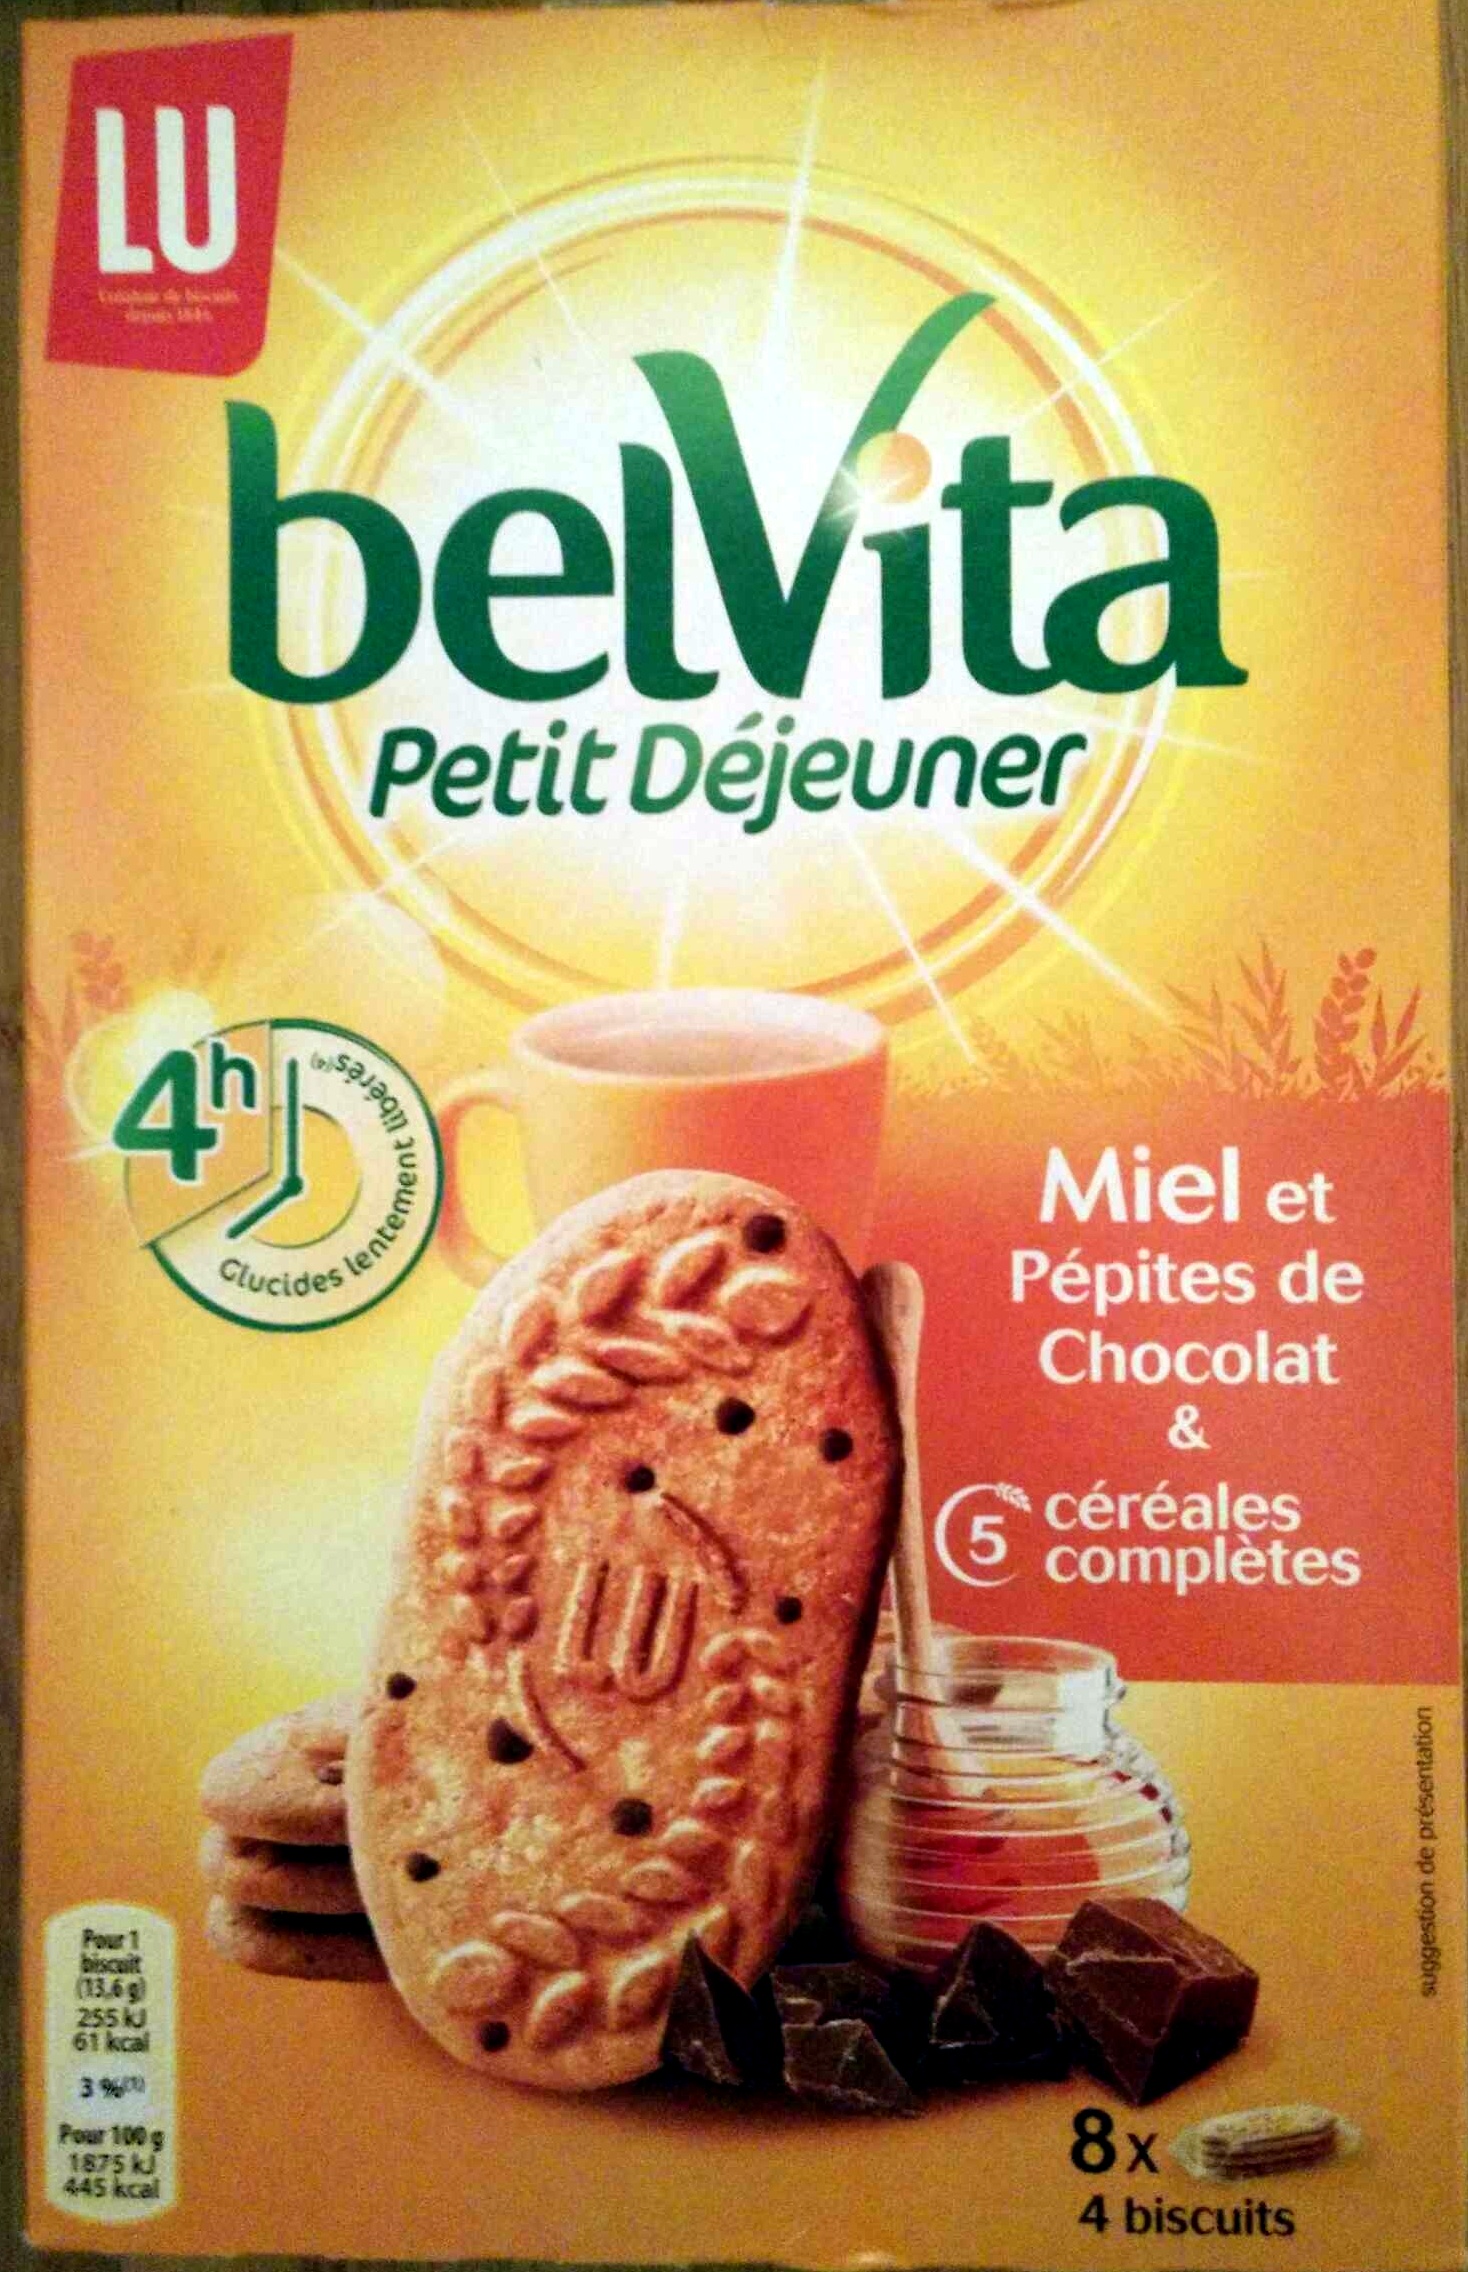 BelVita - Petit Déjeuner - Miel et Pépites de Chocolat - Product - fr